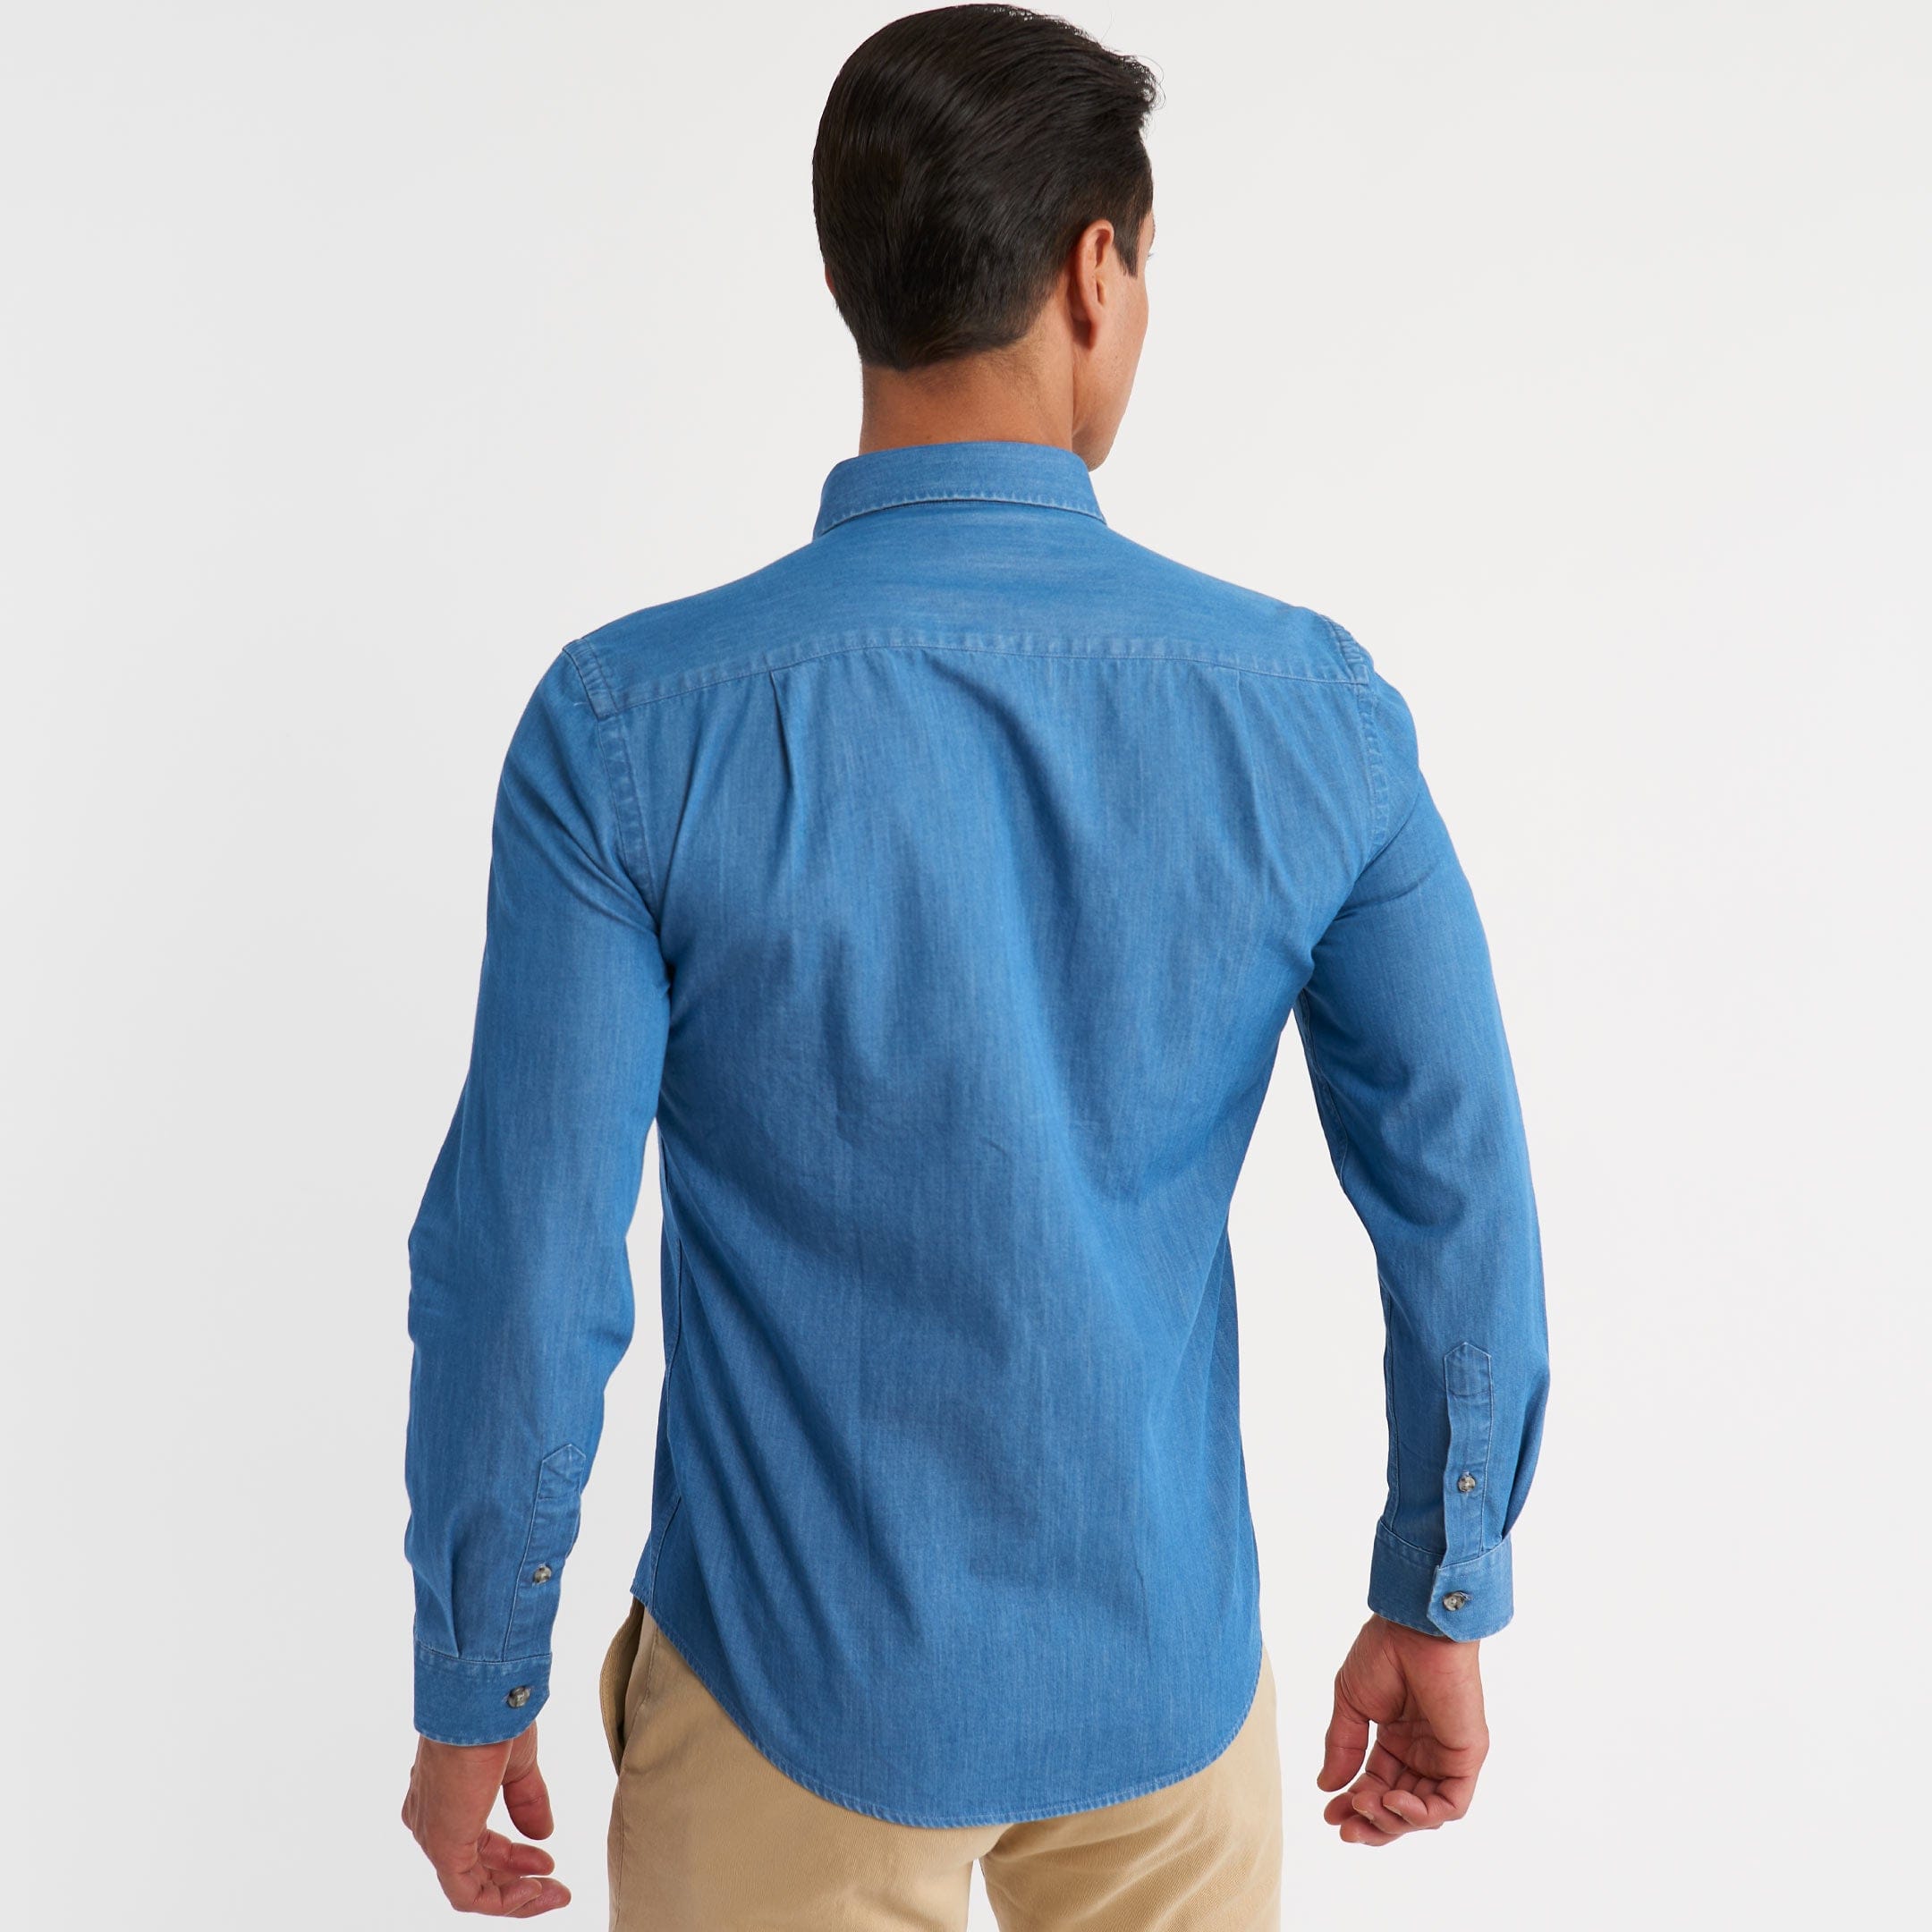 Escada Sport Light Blue Denim Button Up Shirt sz Medium